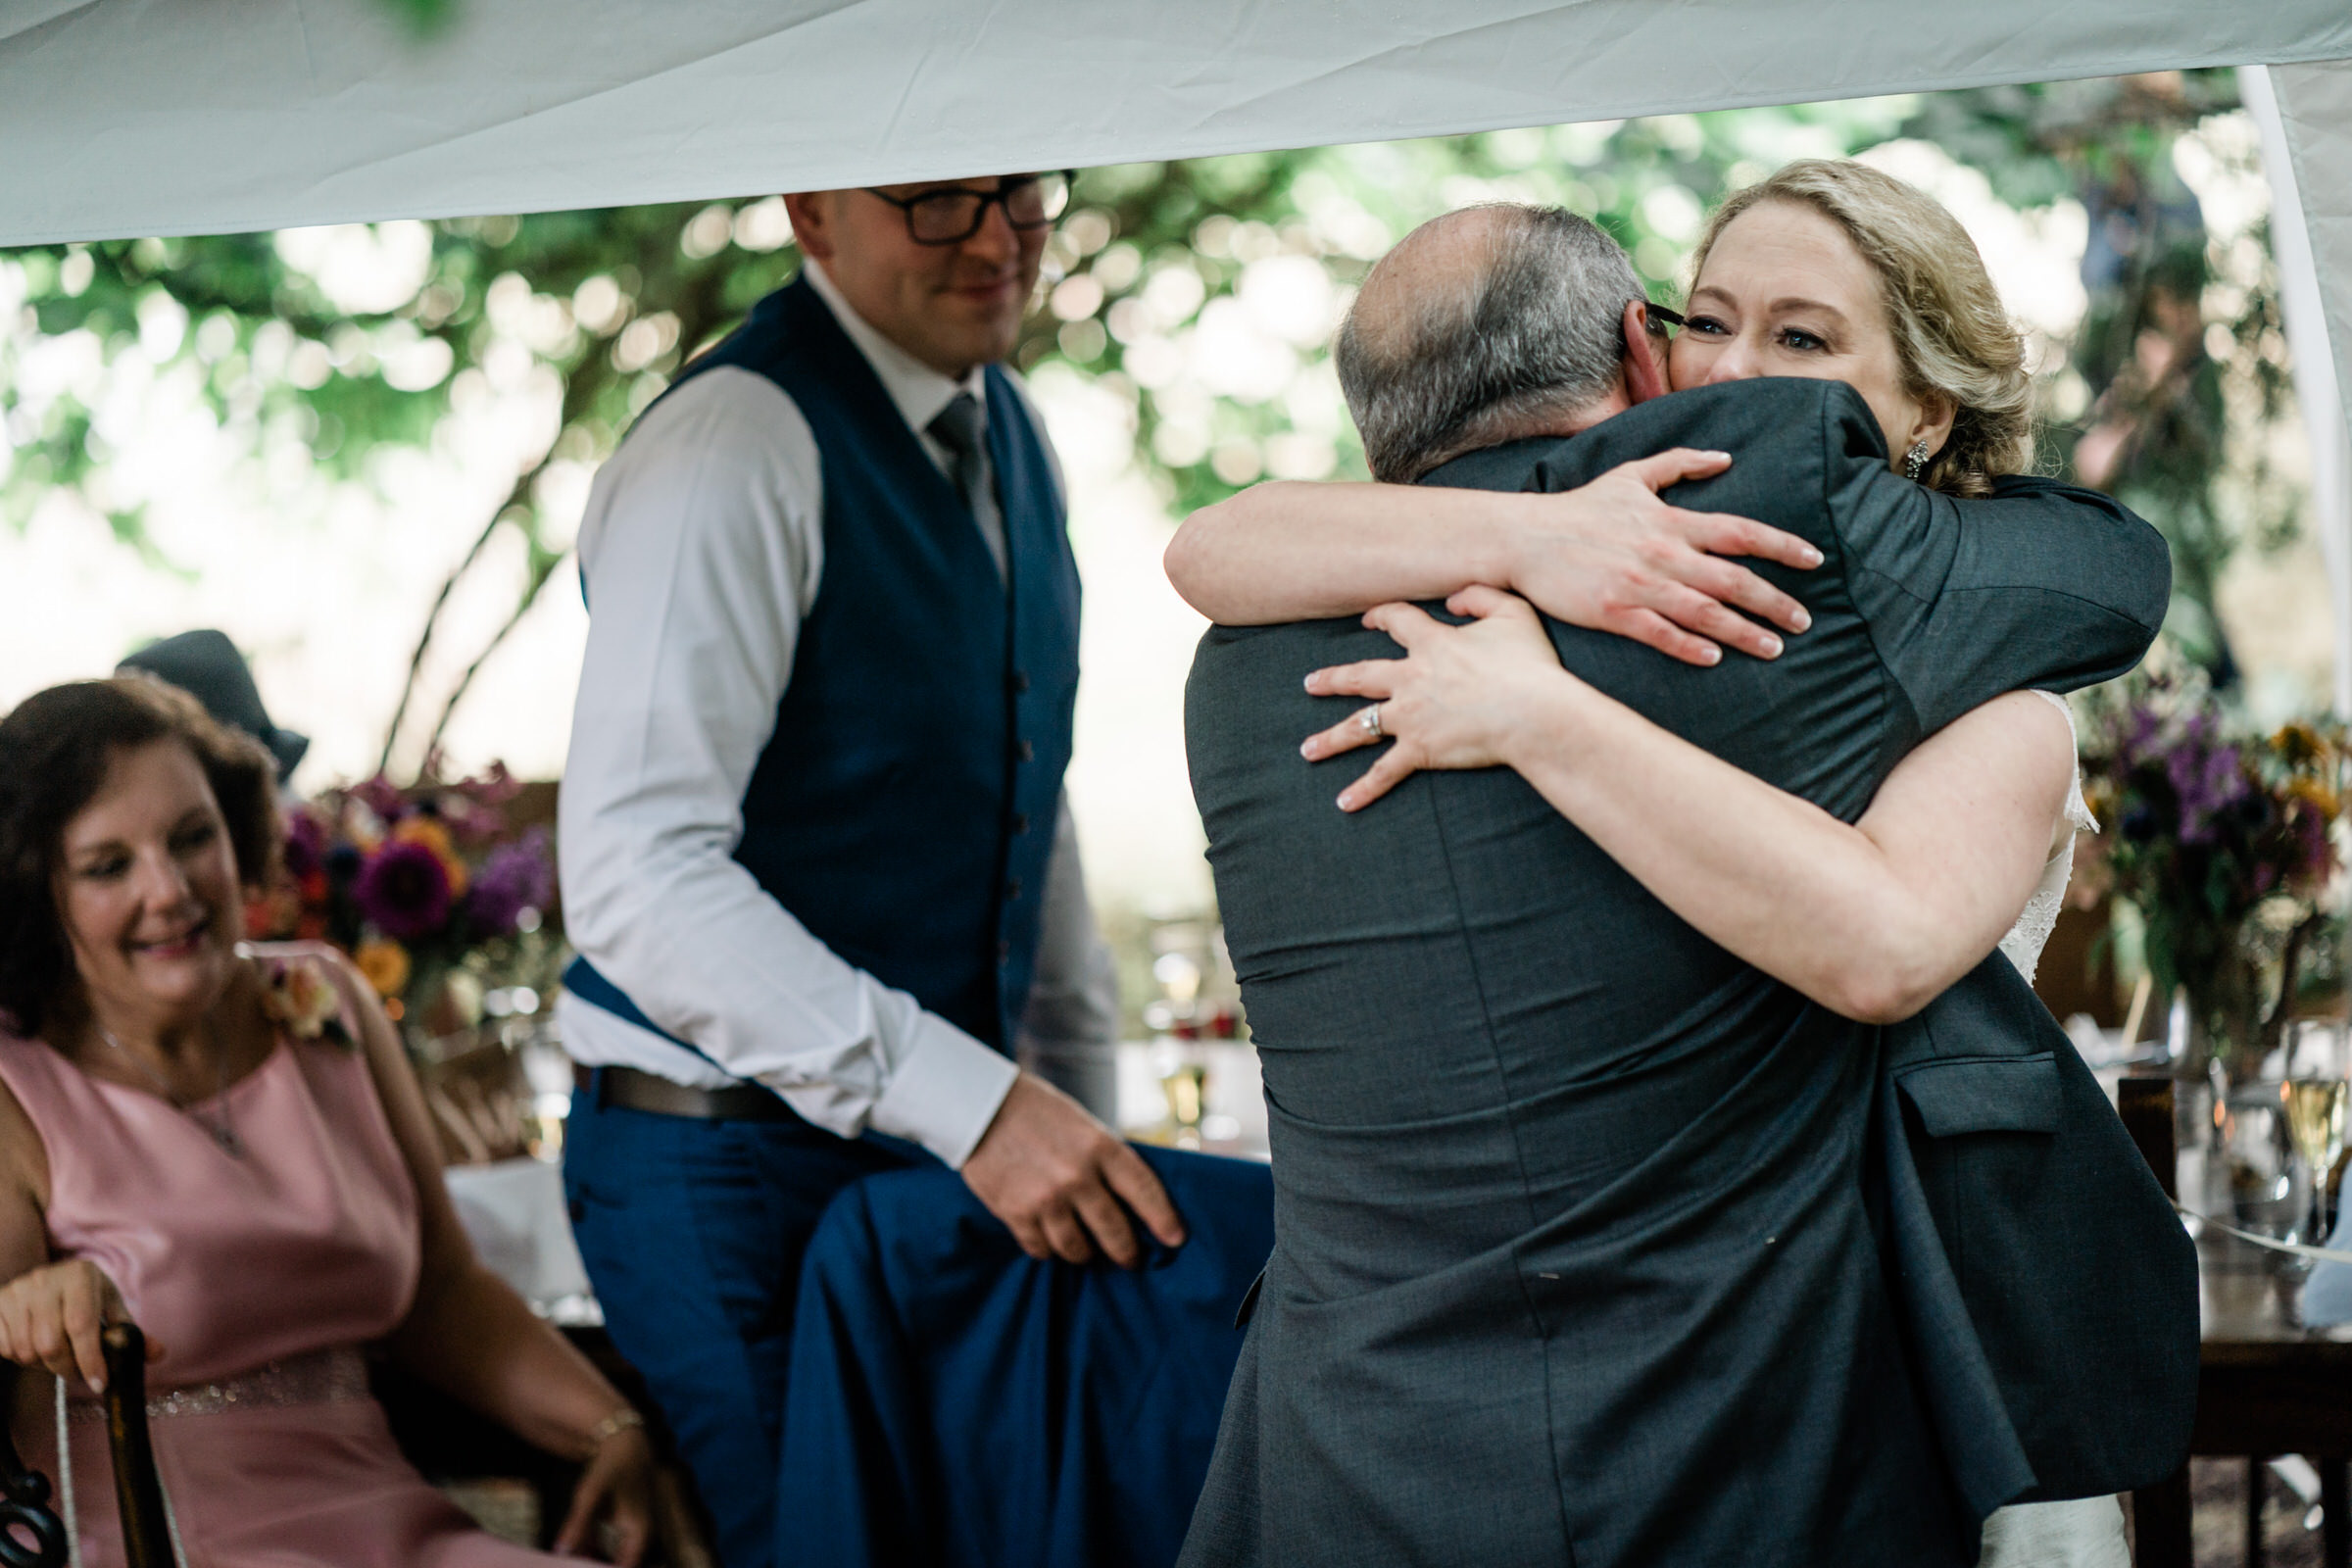 Wayfarer Whidbey Island Wedding: Joe's dad gives Sara a hug after his toast